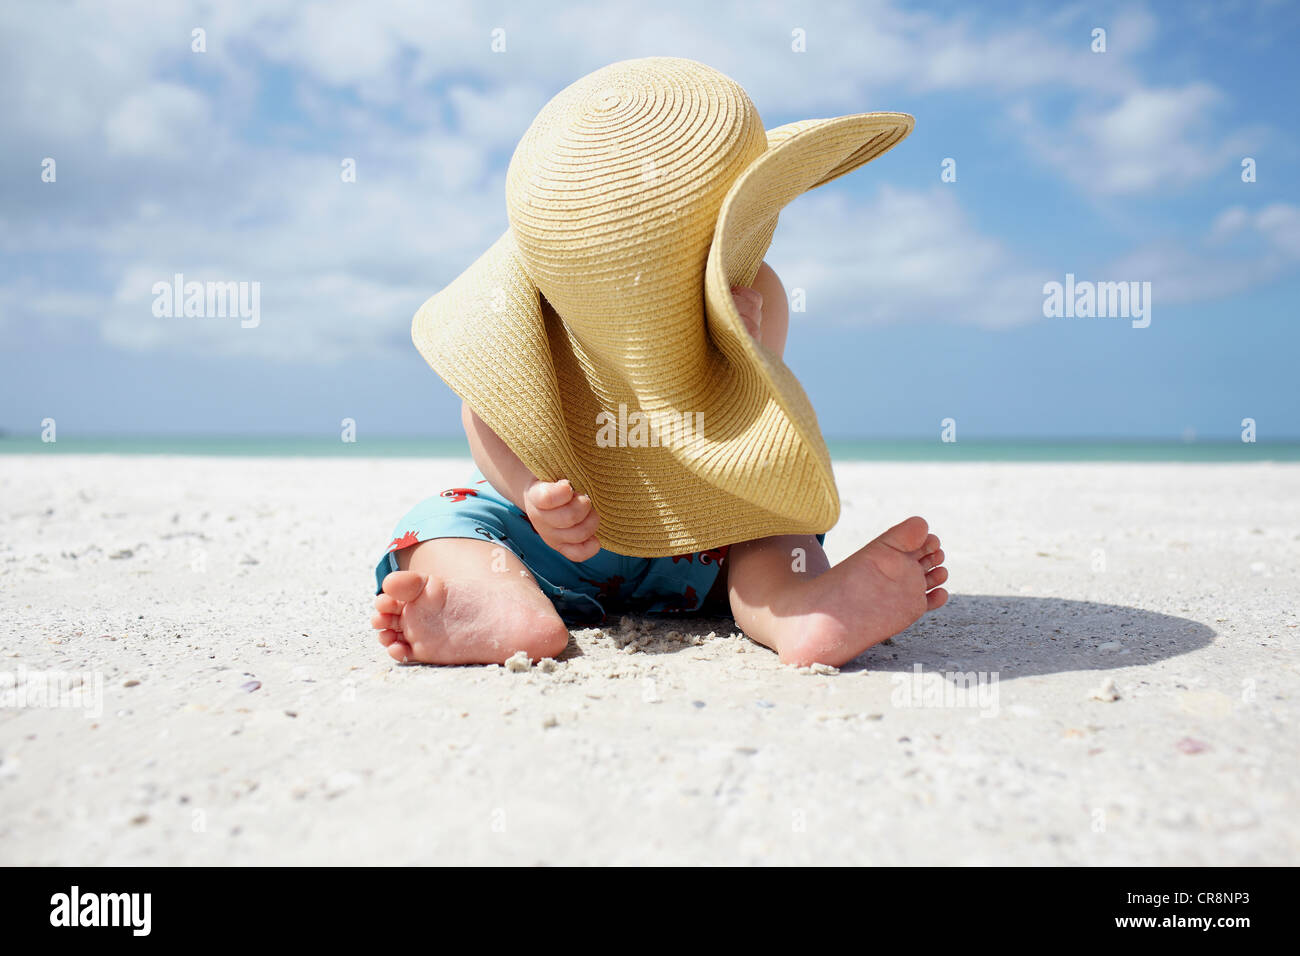 Bébé Garçon jouant avec le chapeau de soleil sur la plage Photo Stock -  Alamy